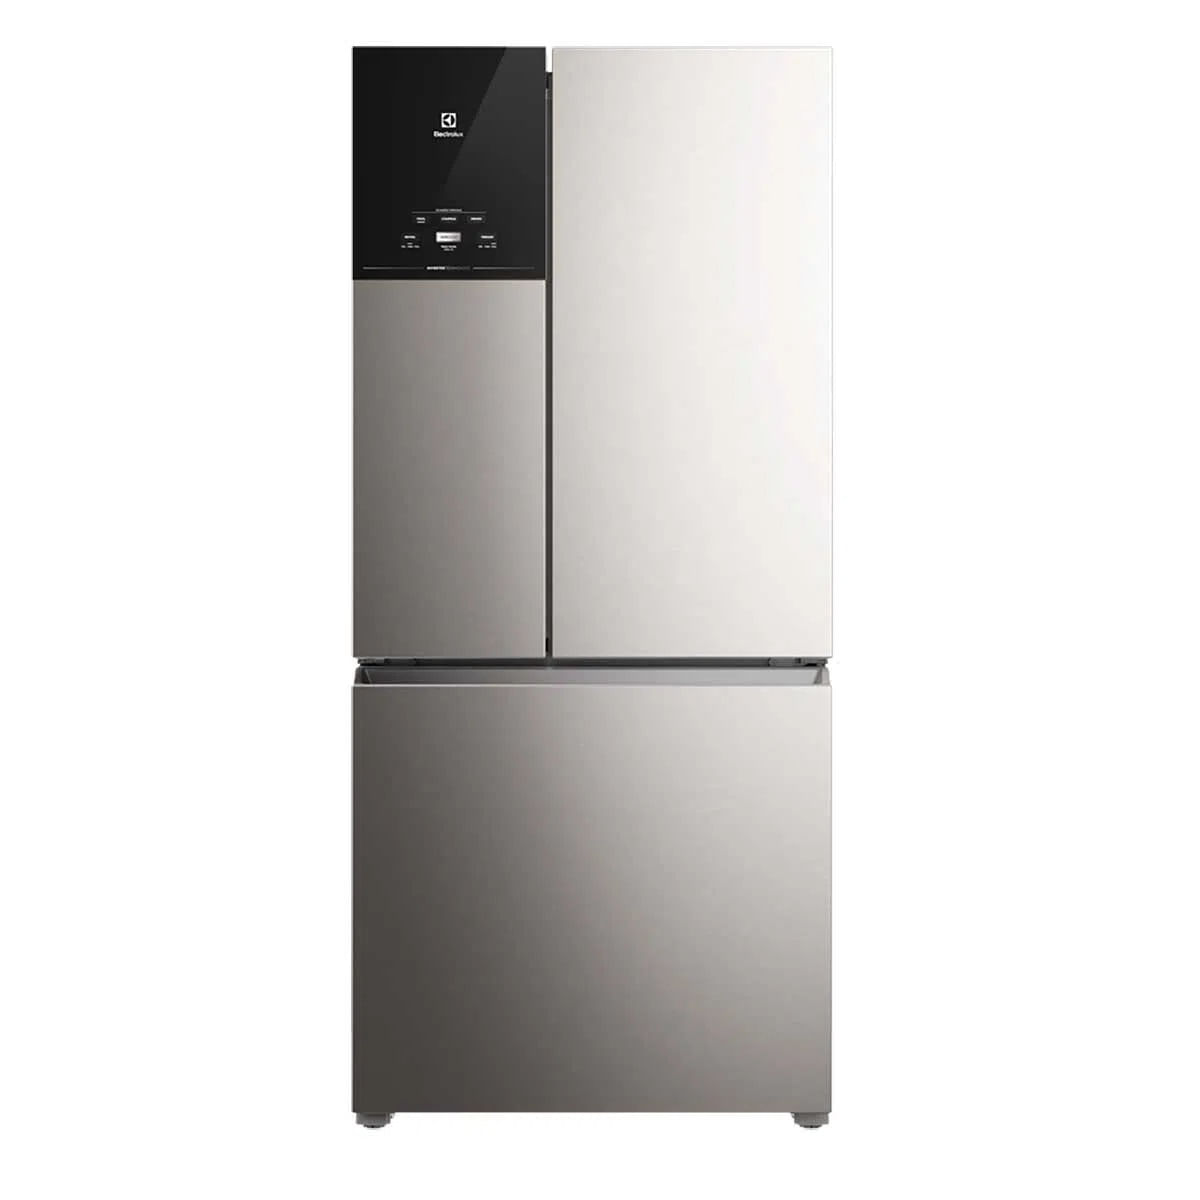 geladeira-electrolux-3-portas-inverter-com-autosense-efficient-im8s-ff3p-590l-x-220v-2.jpg